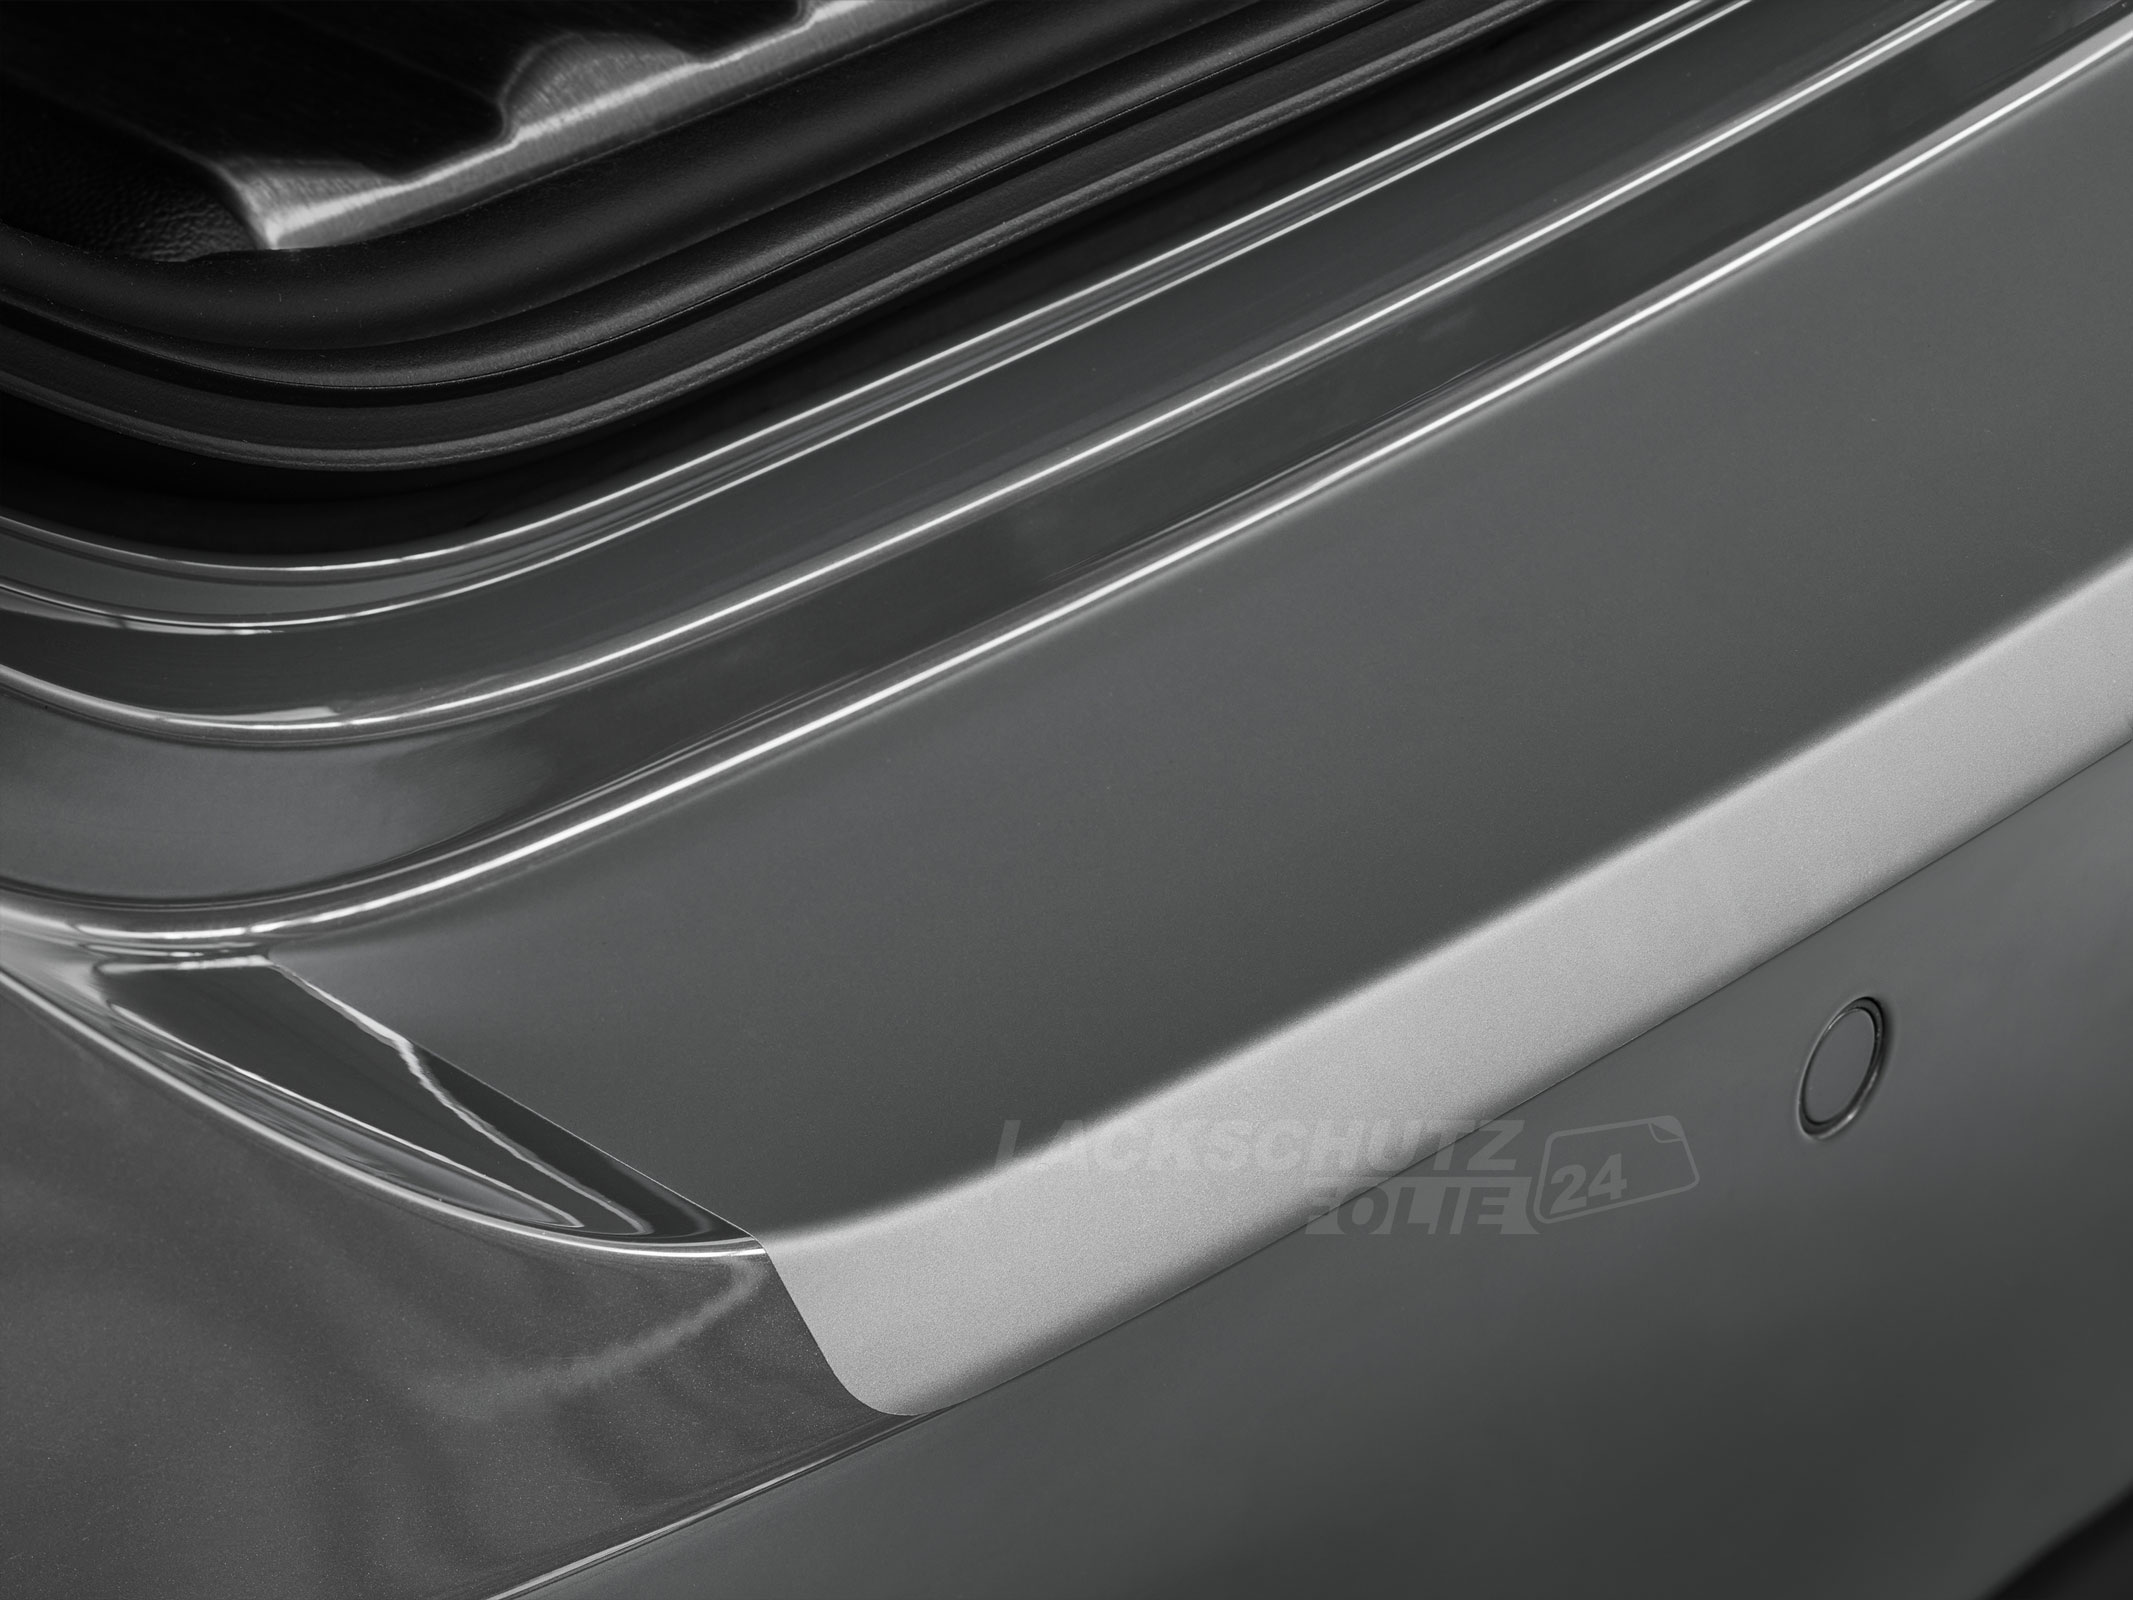 Ladekantenschutzfolie - Transparent Glatt MATT für Peugeot 508 RXH Facelift, BJ 09/2014-06/2019